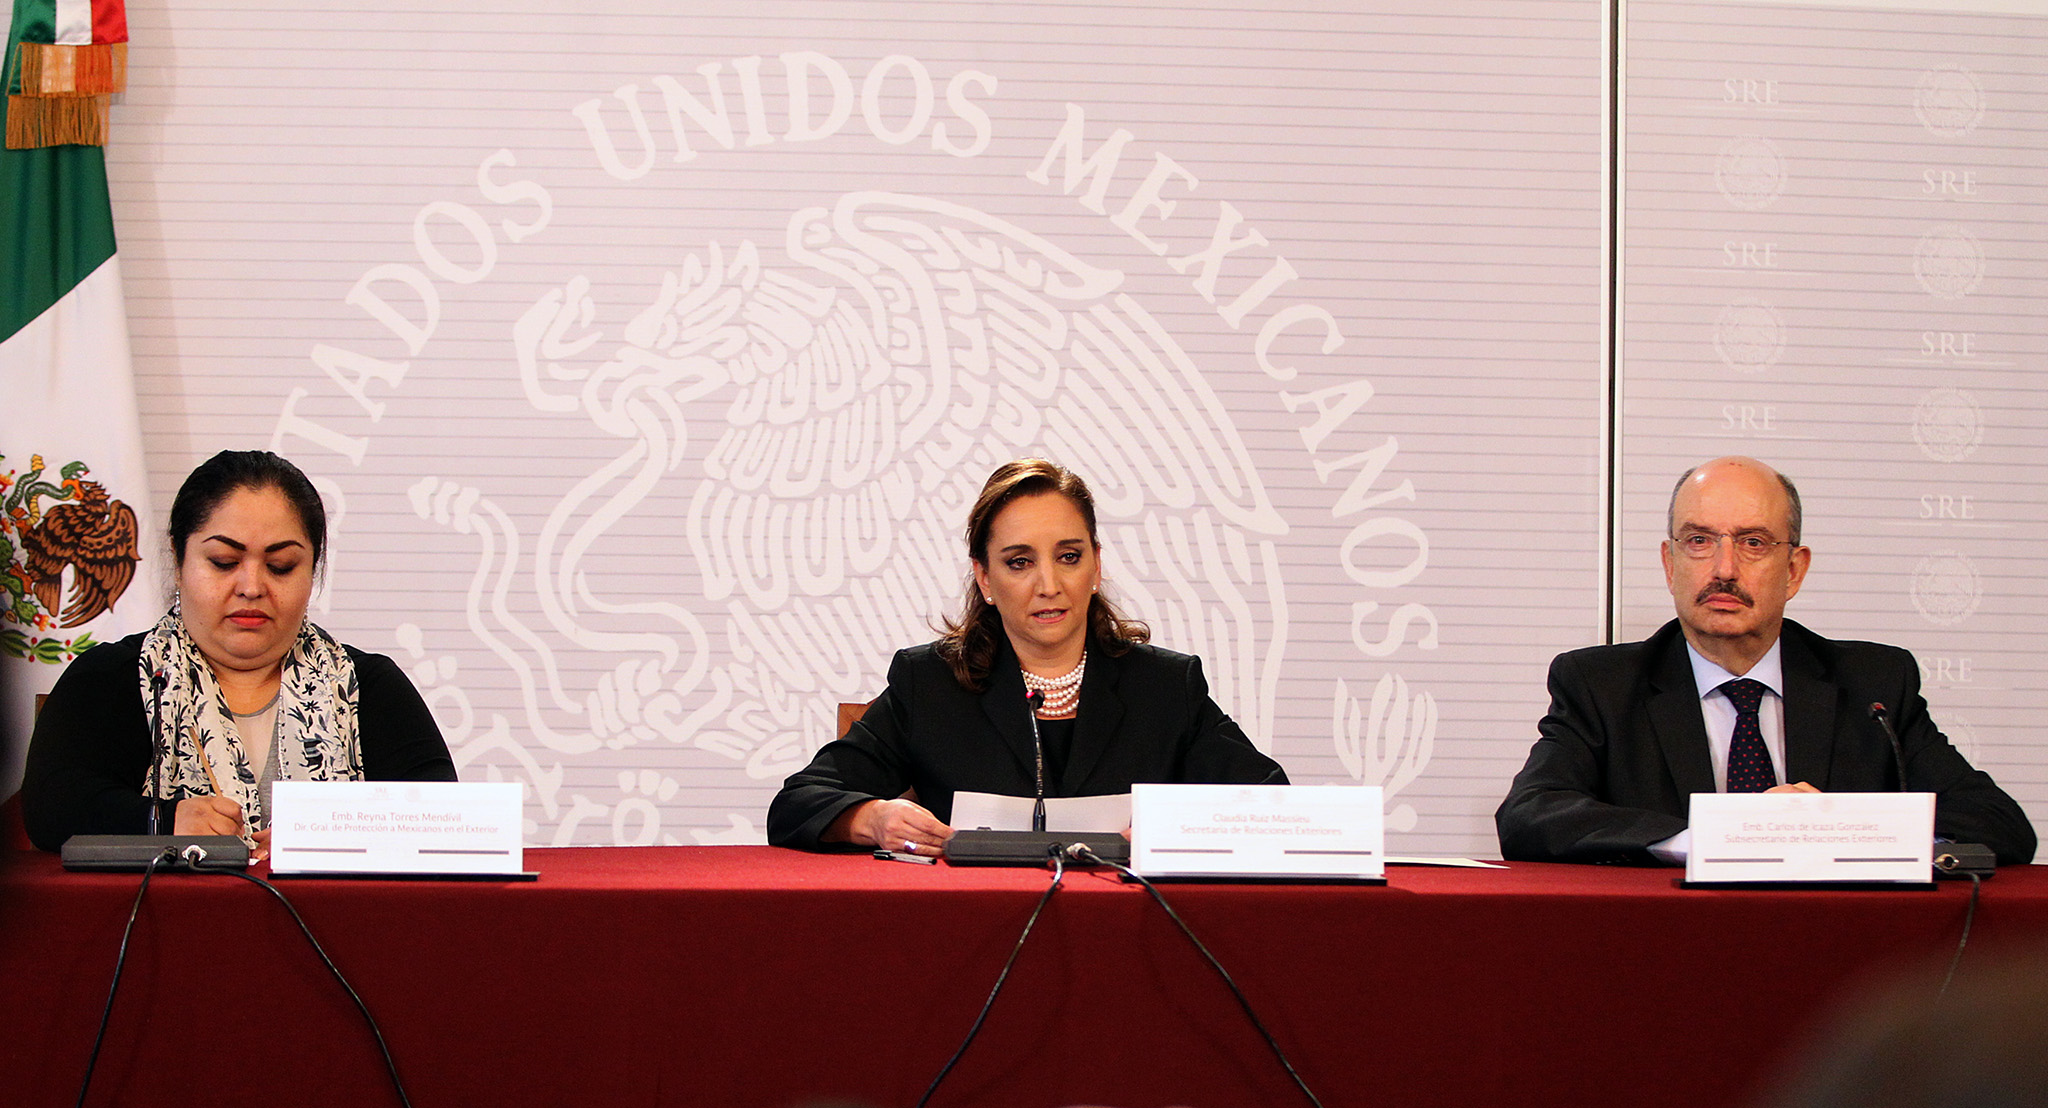 FOTO 2 Embajadora Reyna Torres  canciller Claudia Ruiz Massieu y el embajador Carlos de Icaza.jpg